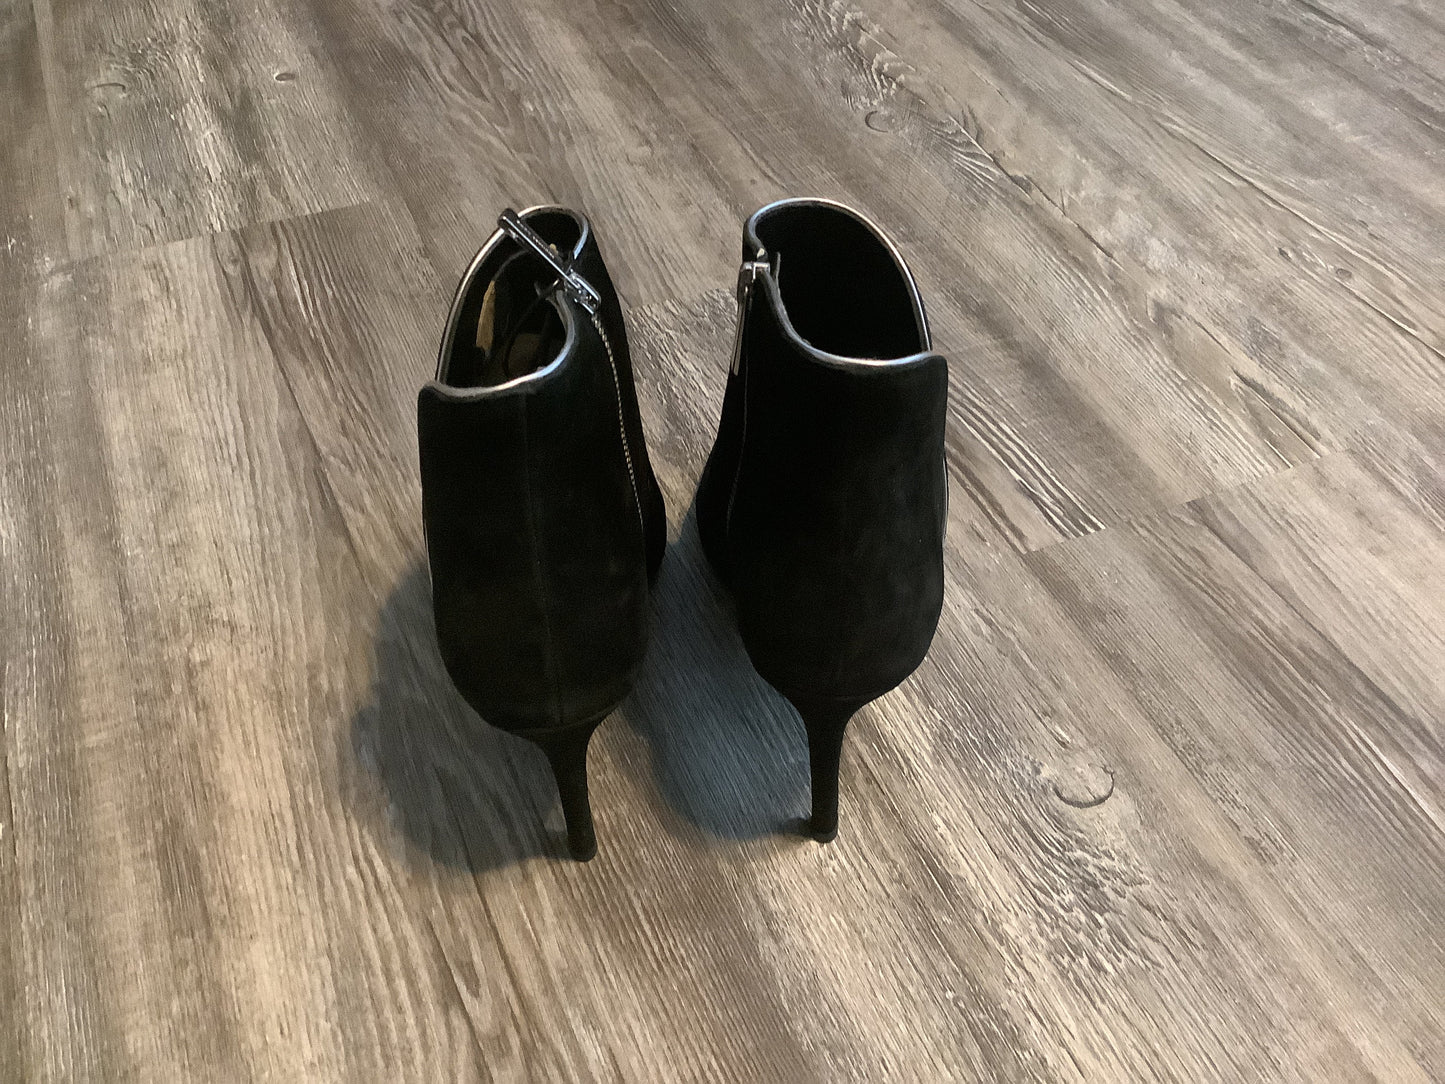 Black Shoes Heels Stiletto Michael Kors, Size 9.5